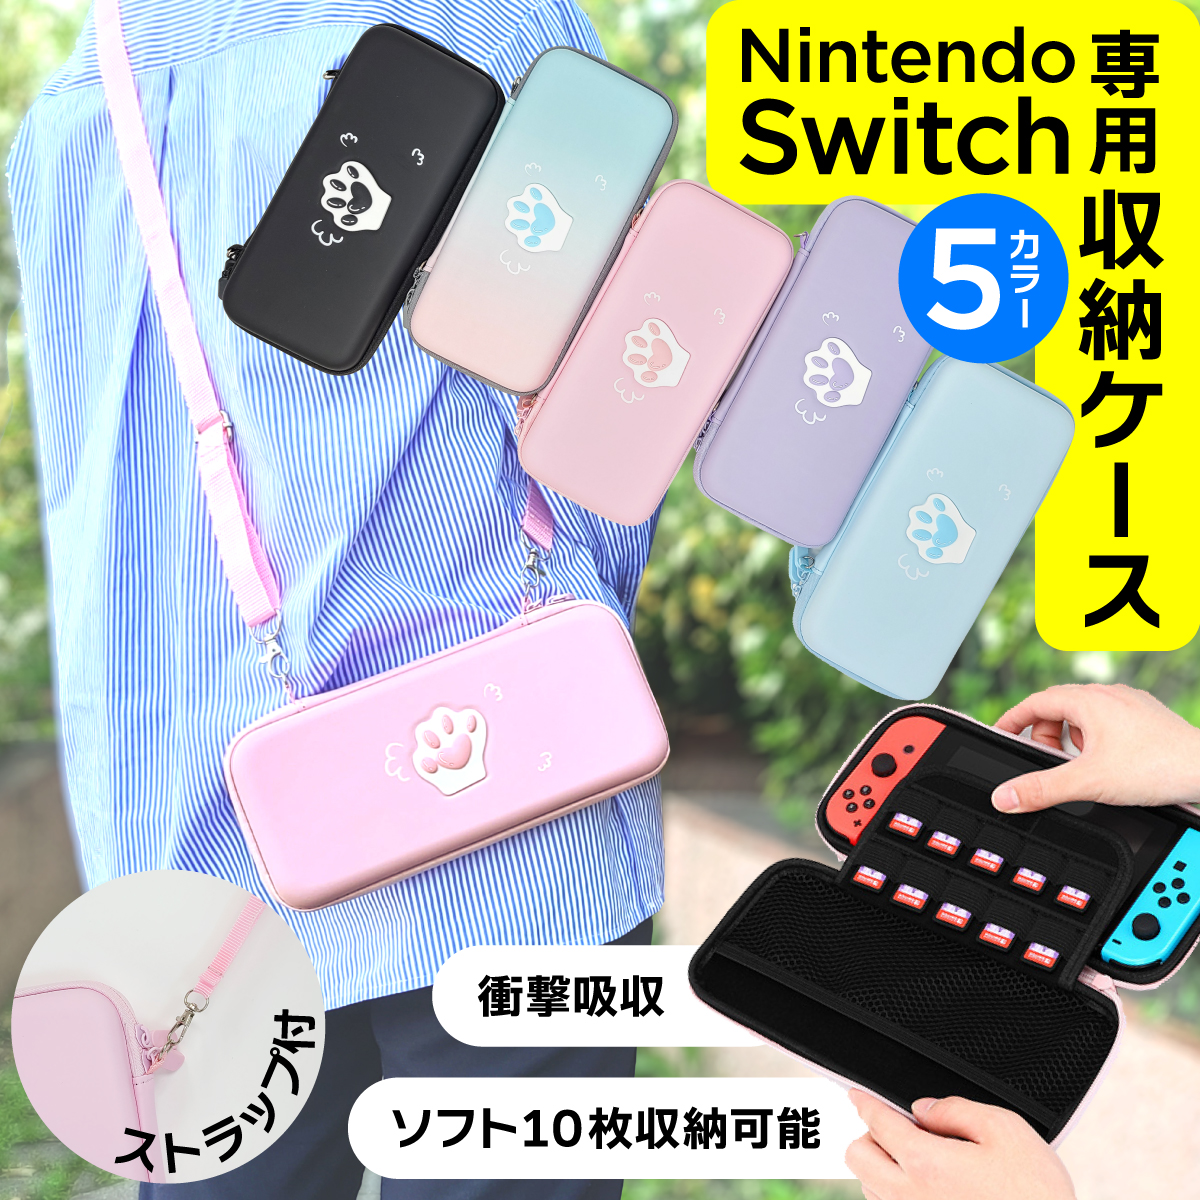 超人気の 24枚 任天堂 Switch スイッチゲームソフト収納ケース ピンク pink